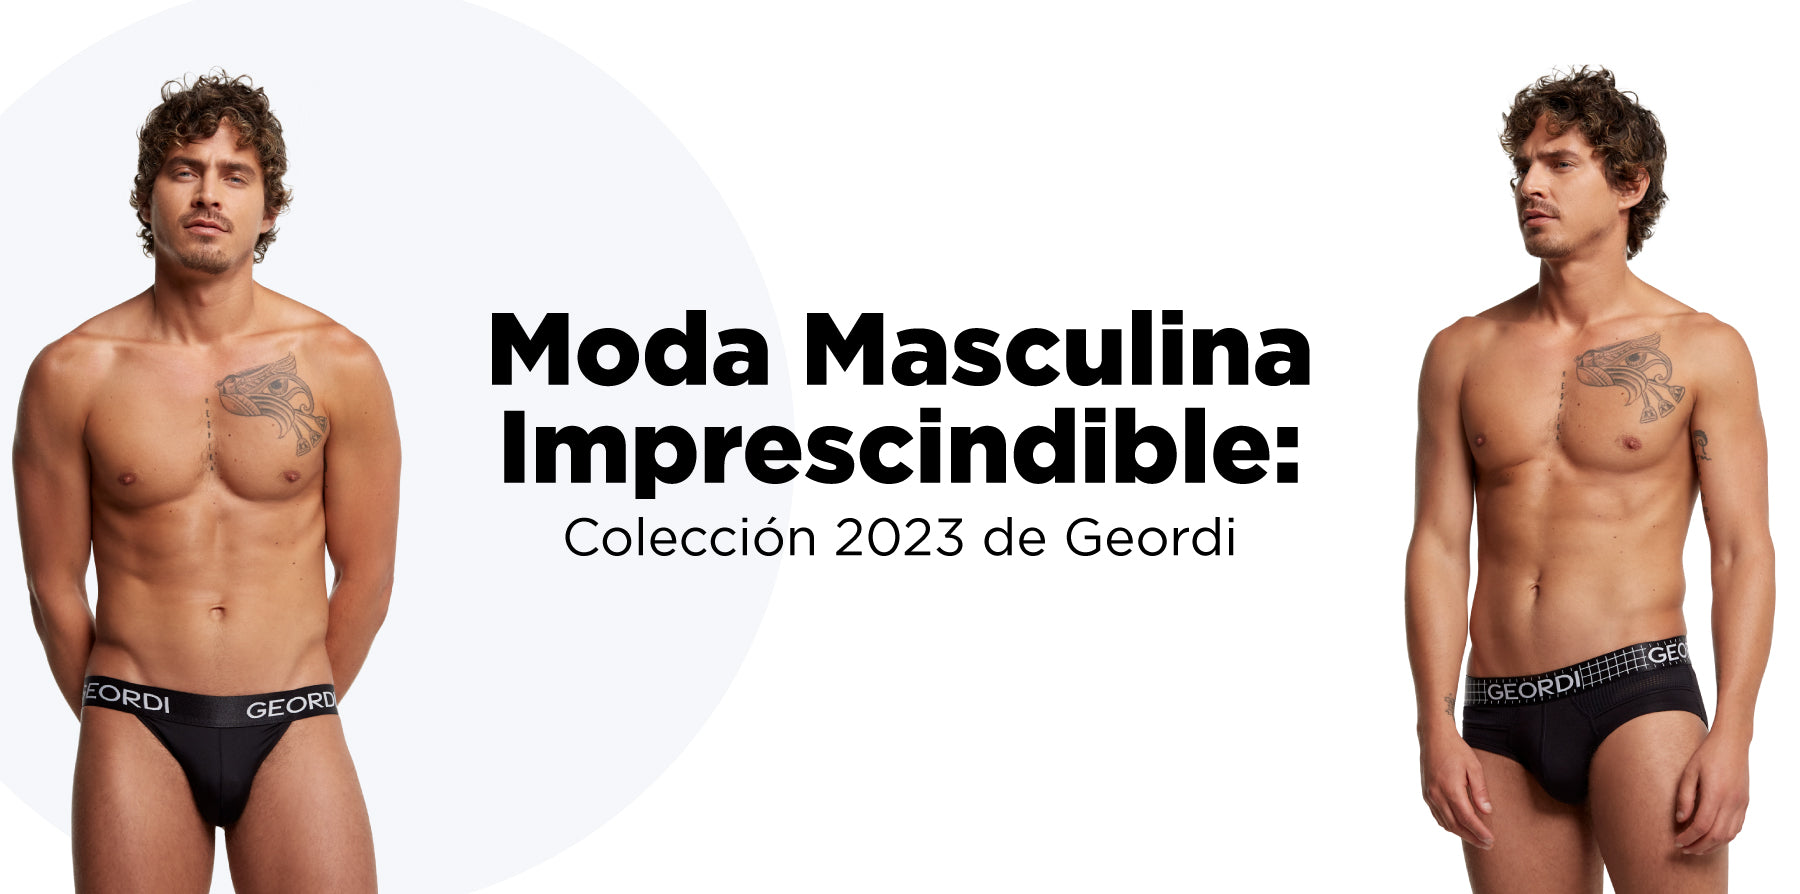 Moda Masculina Imprescindible: Colección 2023 de Geordi